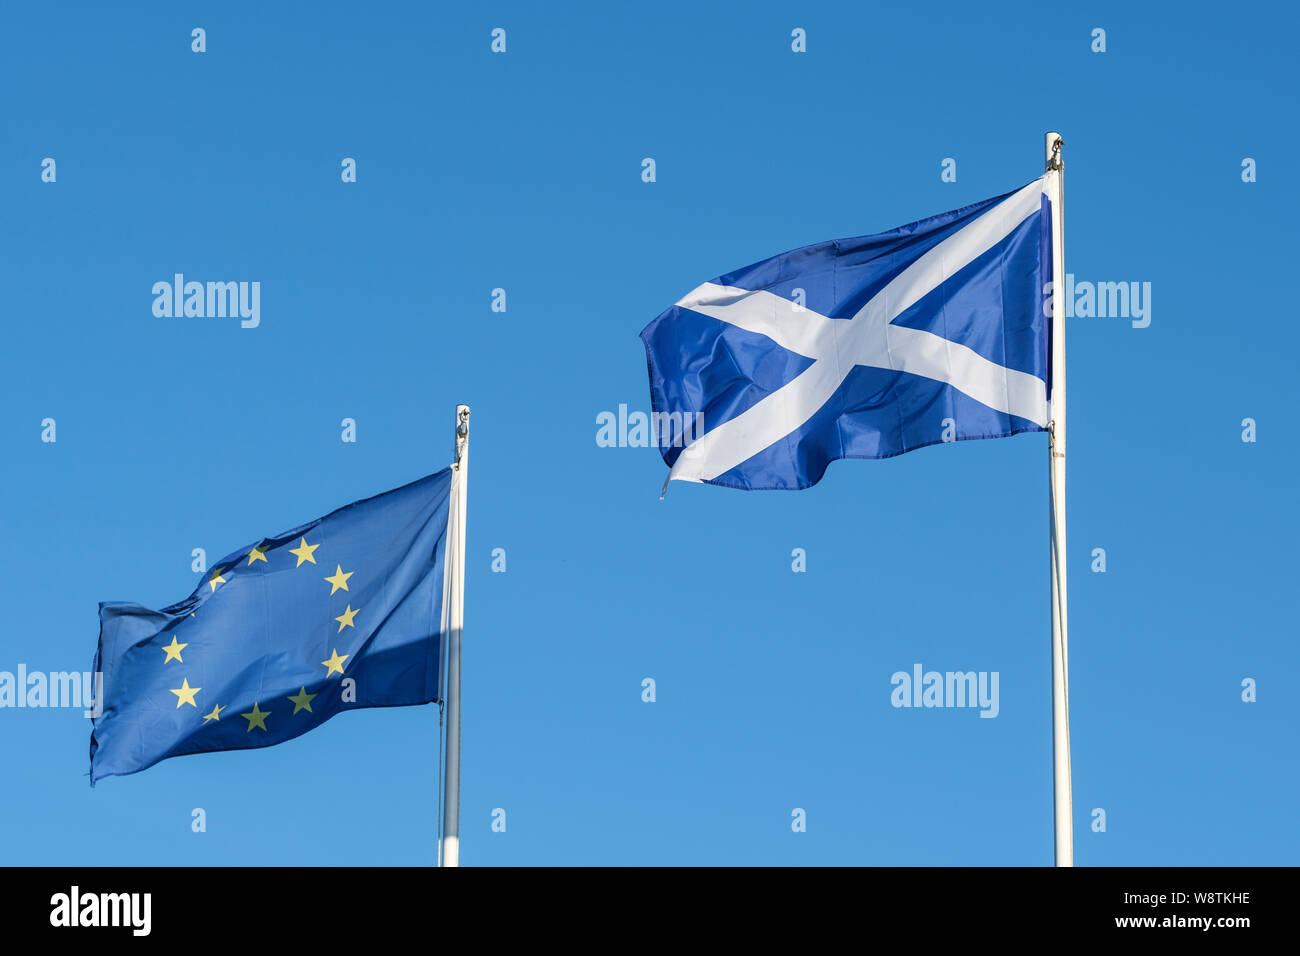 Bandiera europea cerchio di dodici a cinque punte stelle gialle su un campo blu, Scozia flay con croce di Sant' Andrea su sfondo blu Foto Stock